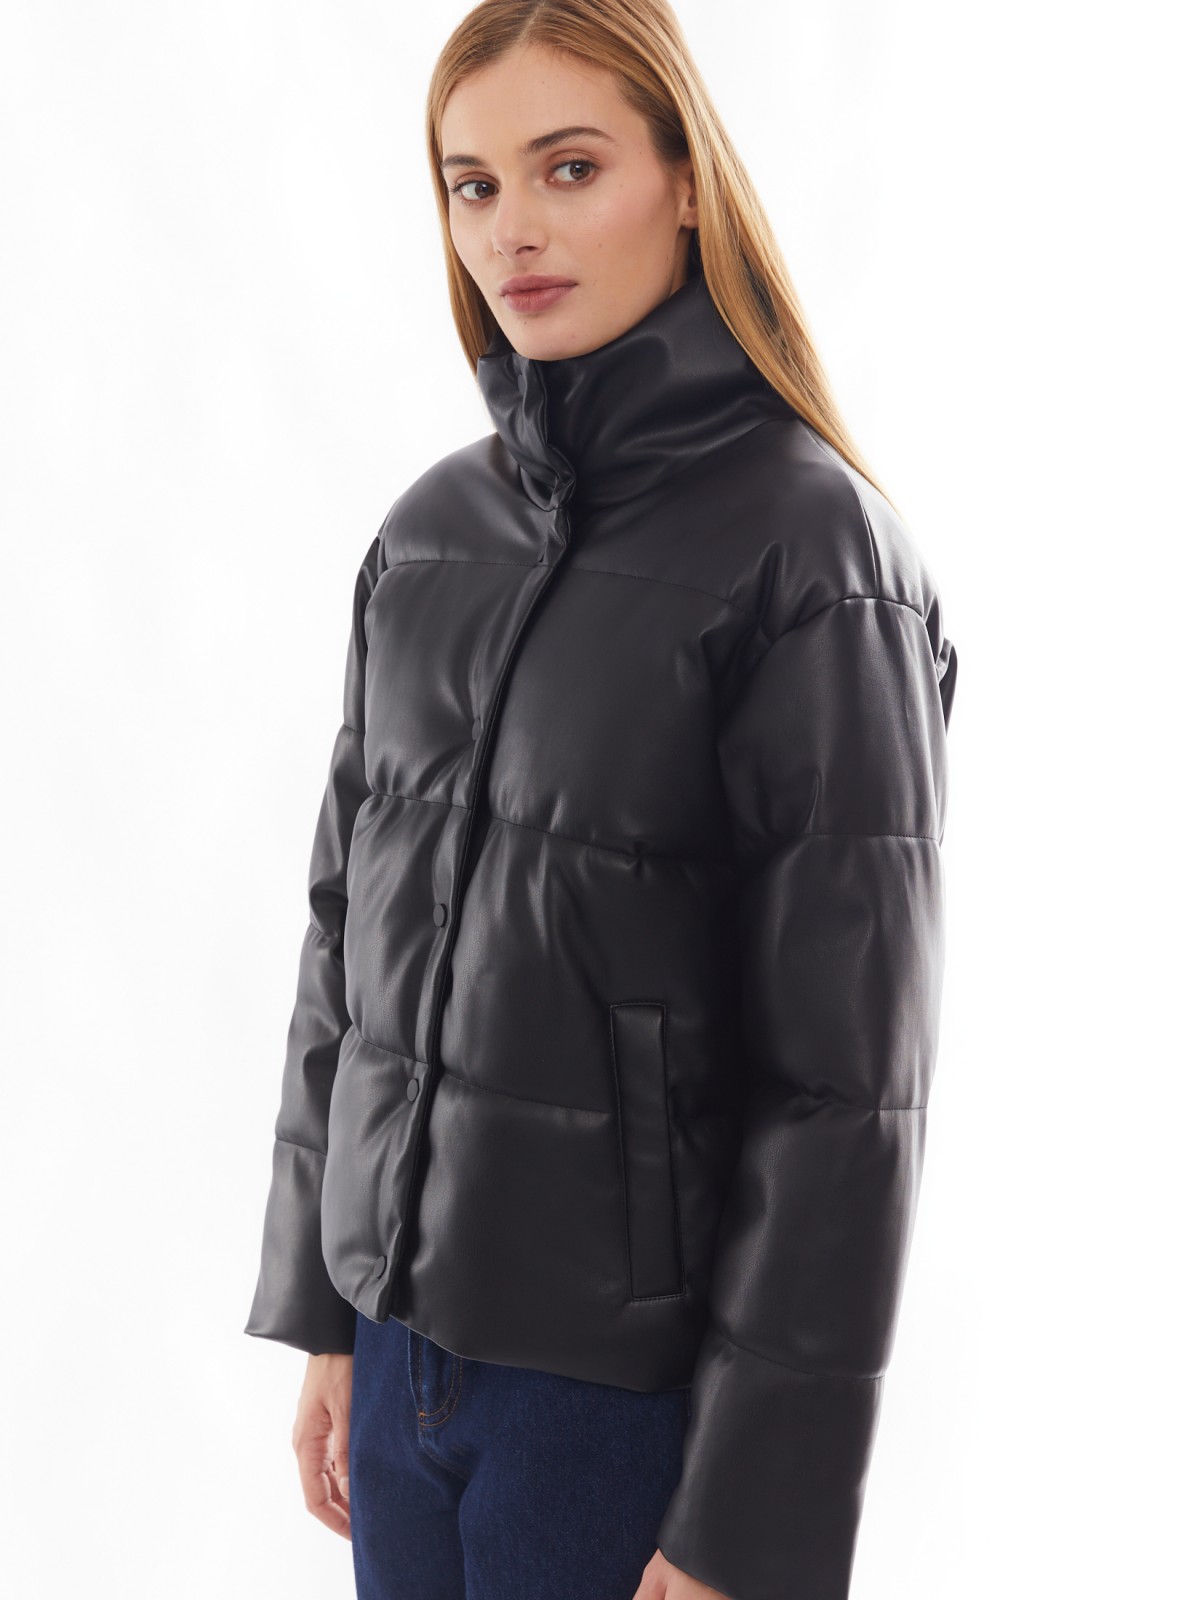 Тёплая стёганая дутая куртка из экокожи с высоким воротником zolla 02412516F034, цвет черный, размер XS - фото 3